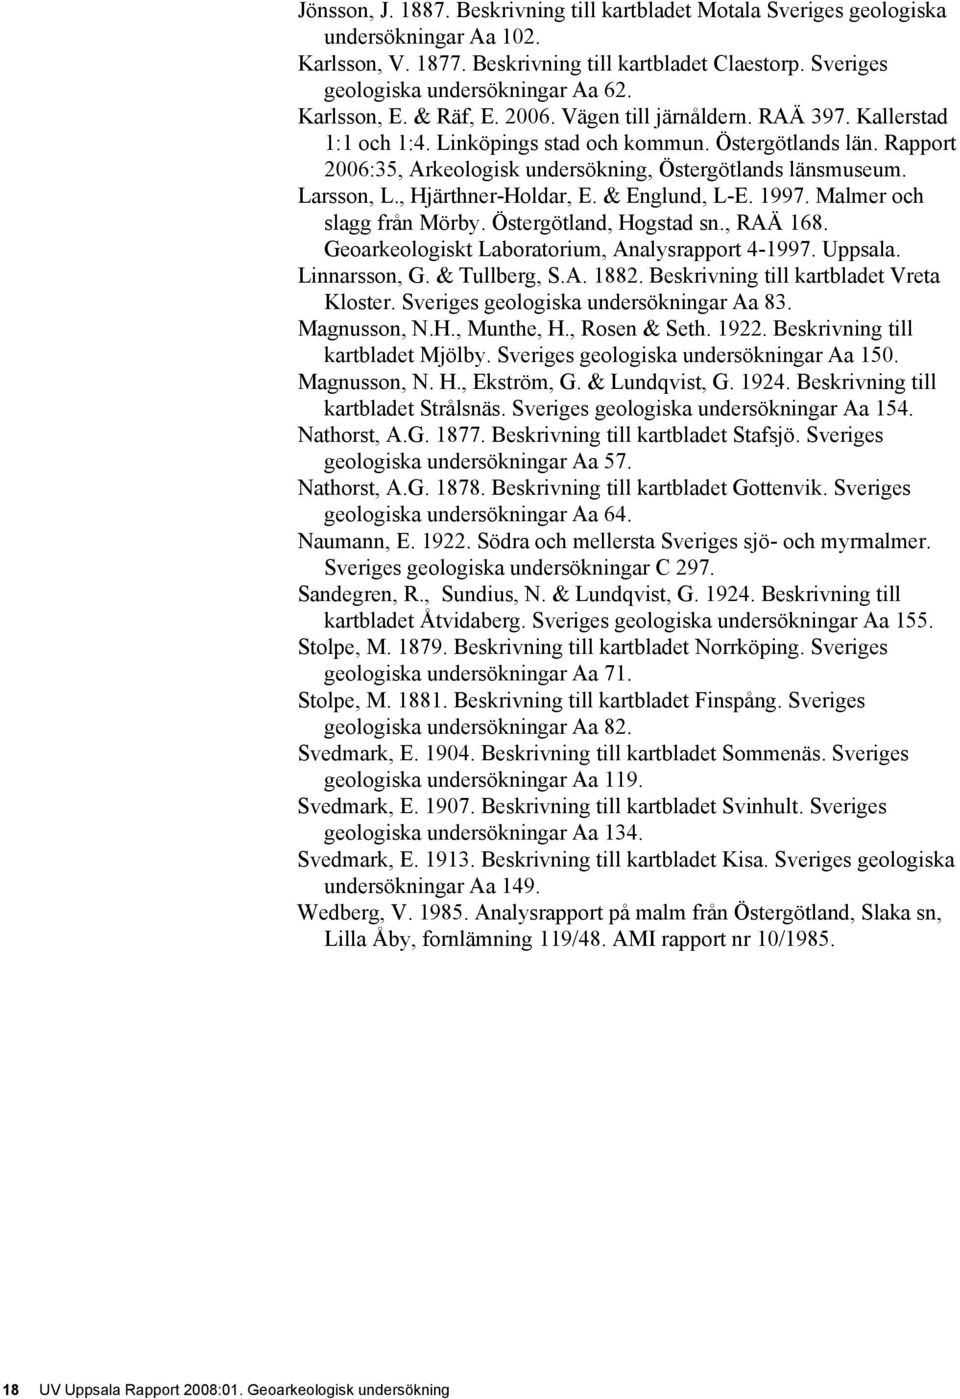 Östergötlands län. Rapport 2006:35, Arkeologisk undersökning, Östergötlands länsmuseum. Larsson, L., Hjärthner-Holdar, E. & Englund, L-E. 1997. Malmer och slagg från Mörby. Östergötland, Hogstad sn.